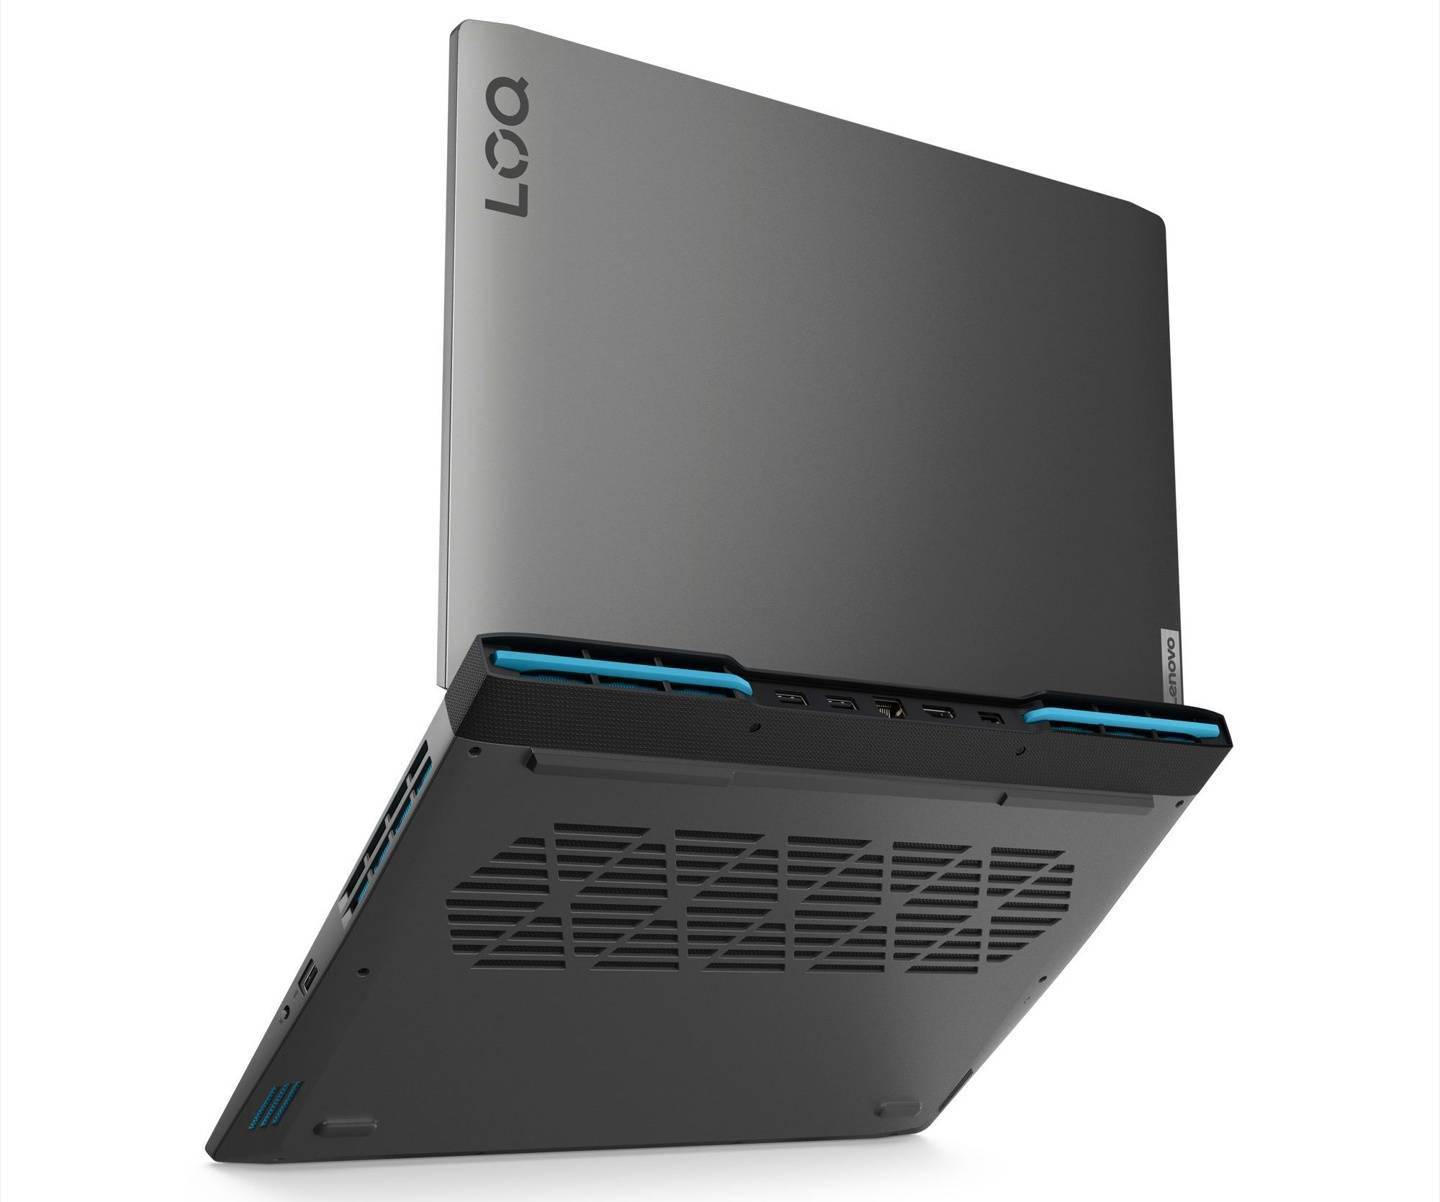 联想海外发布全新“LOQ”系列笔记本 / 台式机    可选第 13 代英特尔酷睿或 AMD Ryzen 7000 系列 CPU